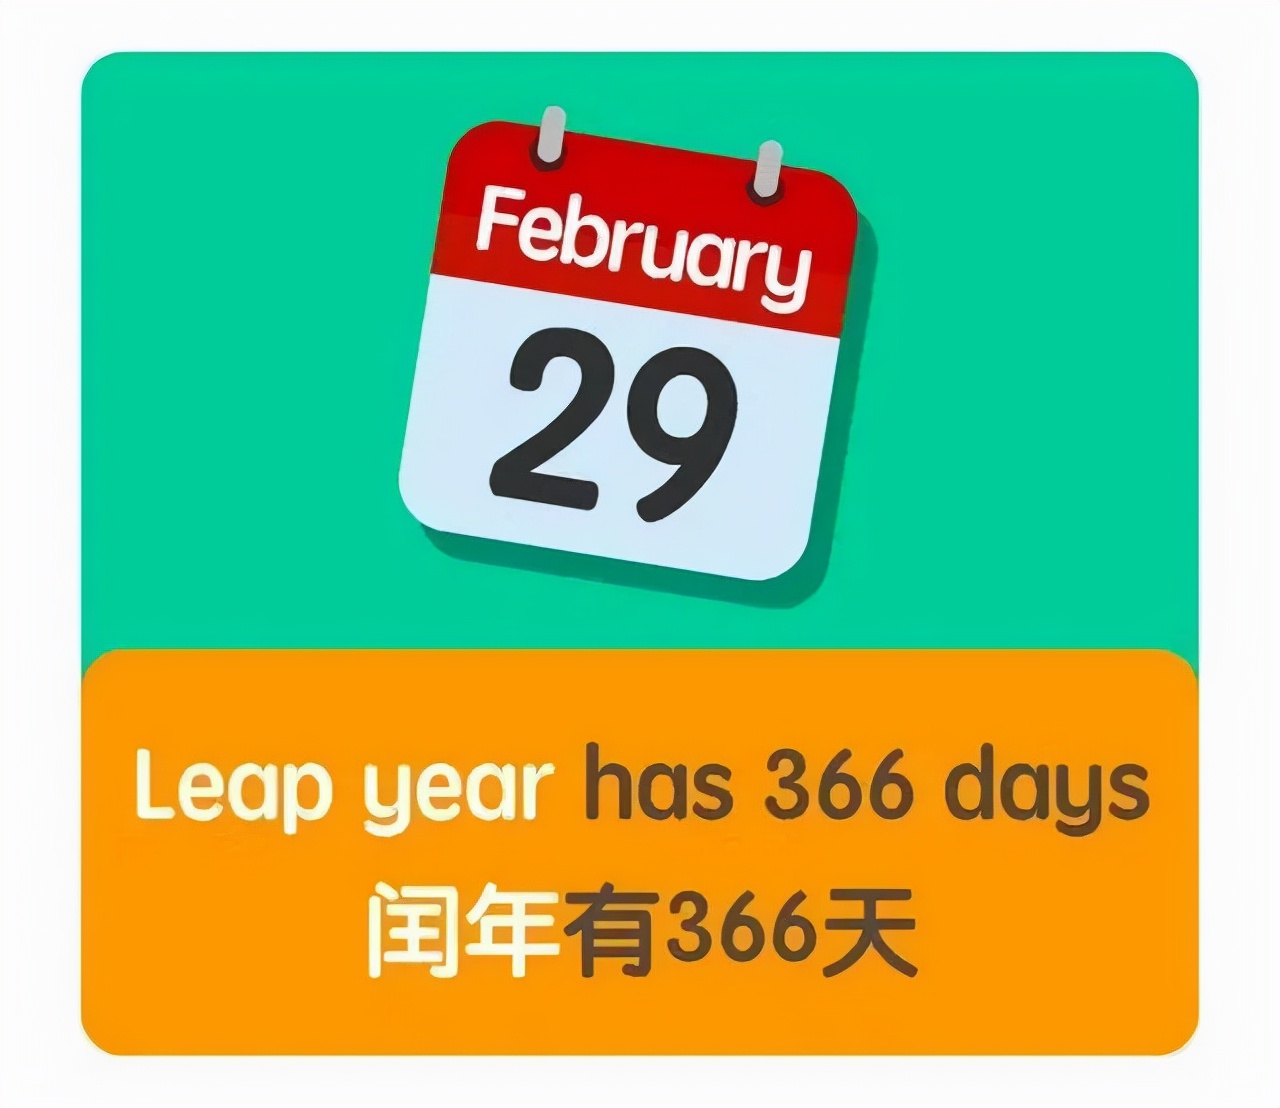 不会还有人不知道为什么闰年有366天吧？